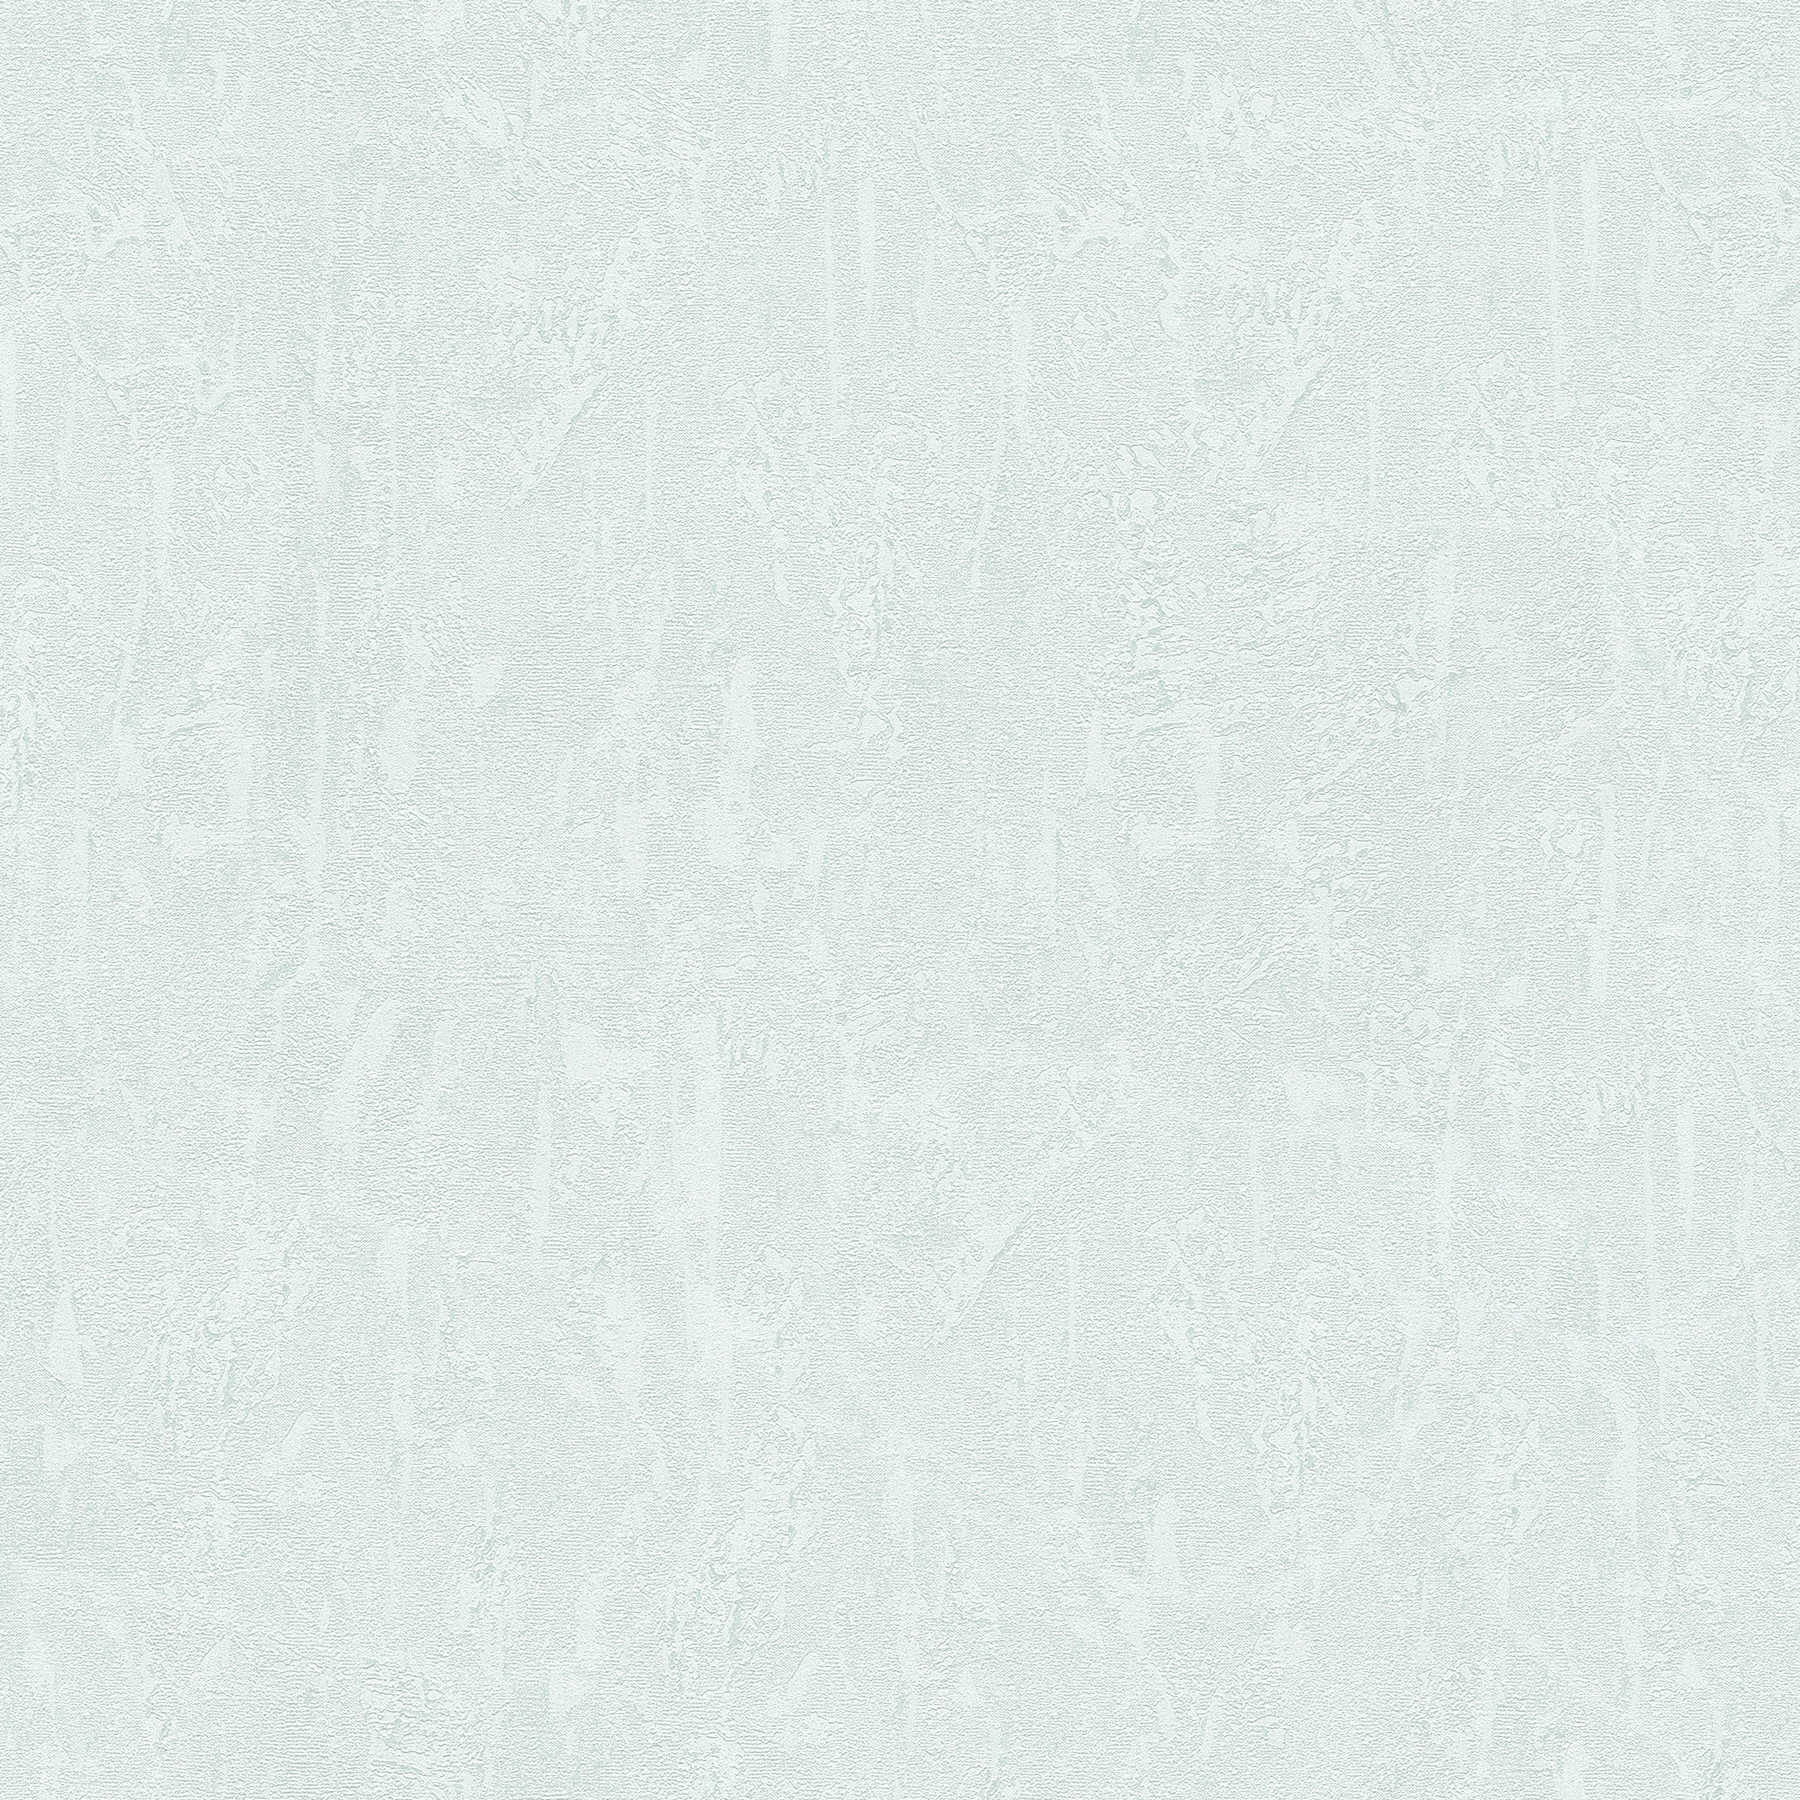         Carta da parati in gesso ottico azzurro bianco con effetto texture
    